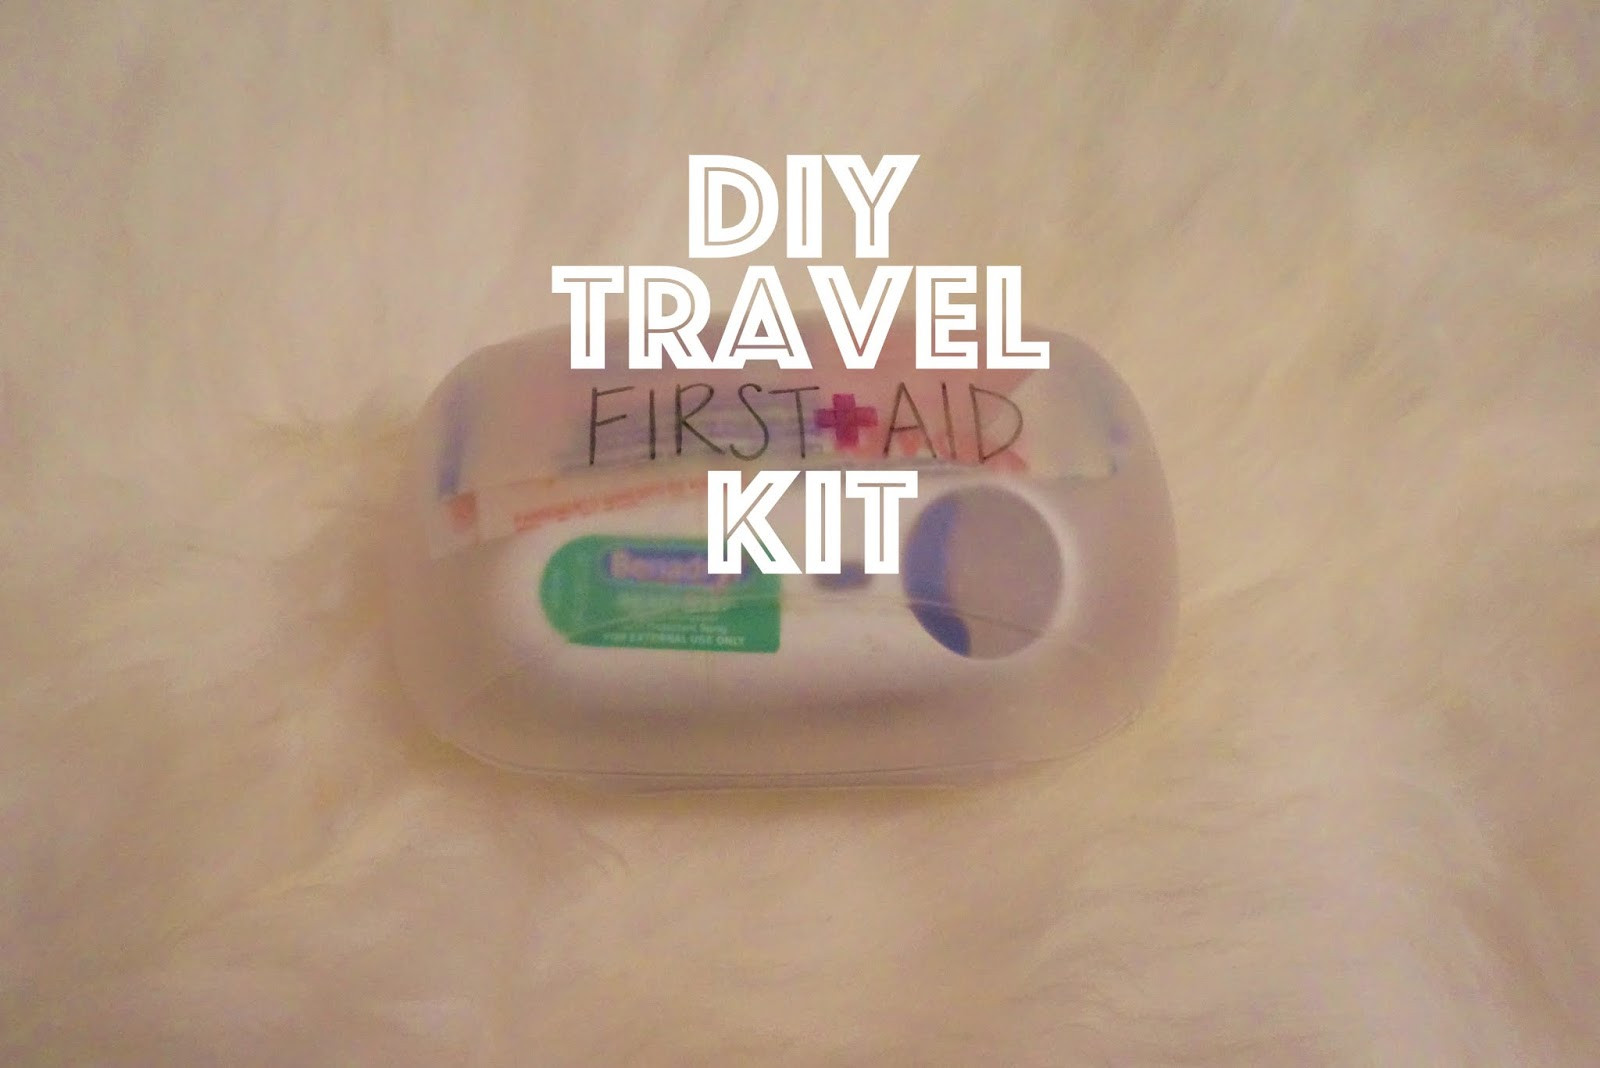 DIY Travel First Aid Kit
 DIY Travel First Aid Kit